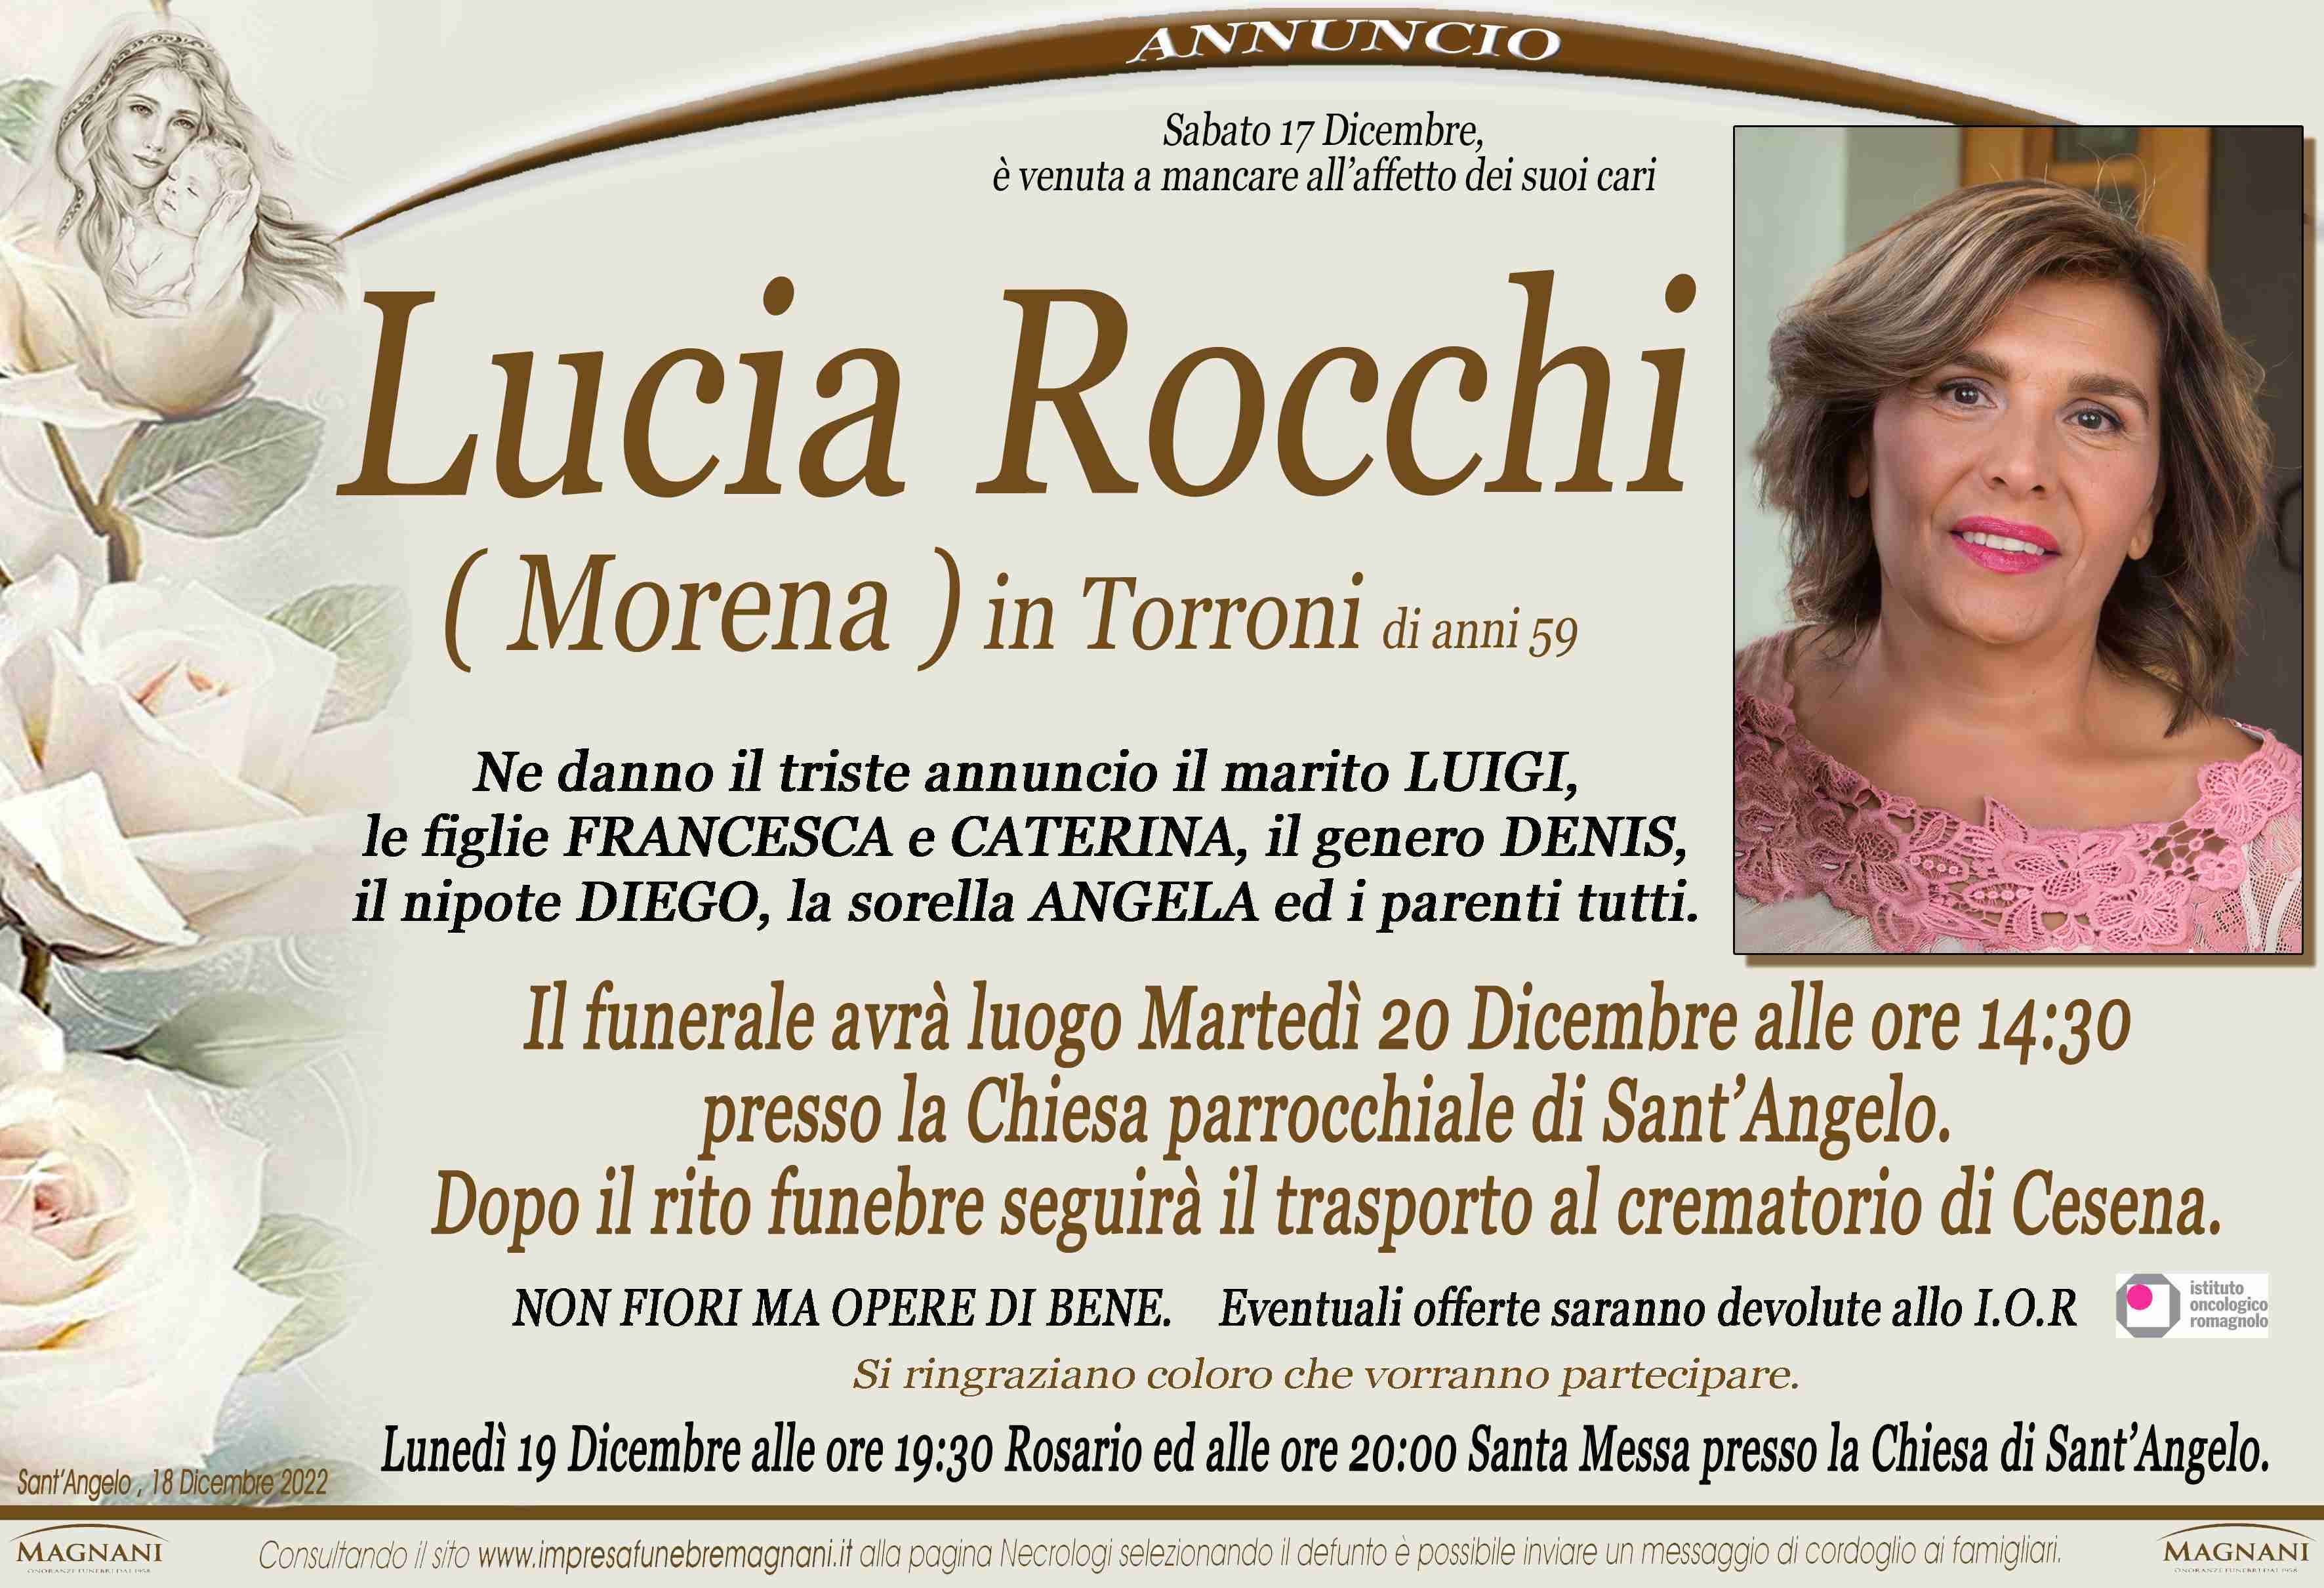 Lucia Rocchi